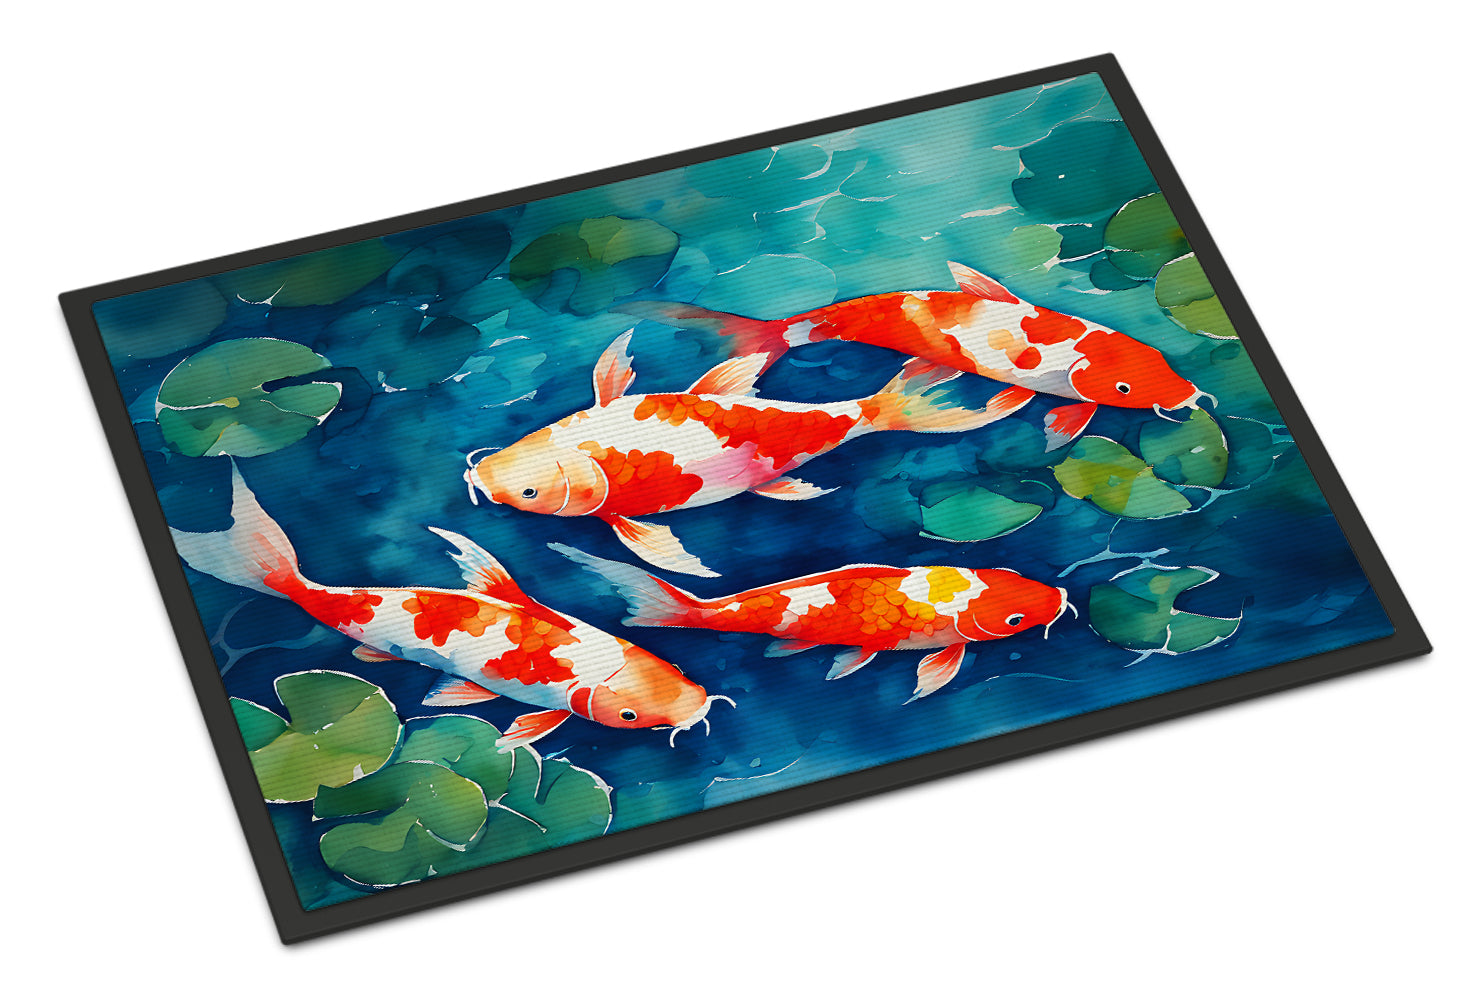 Buy this Koi Fish Doormat